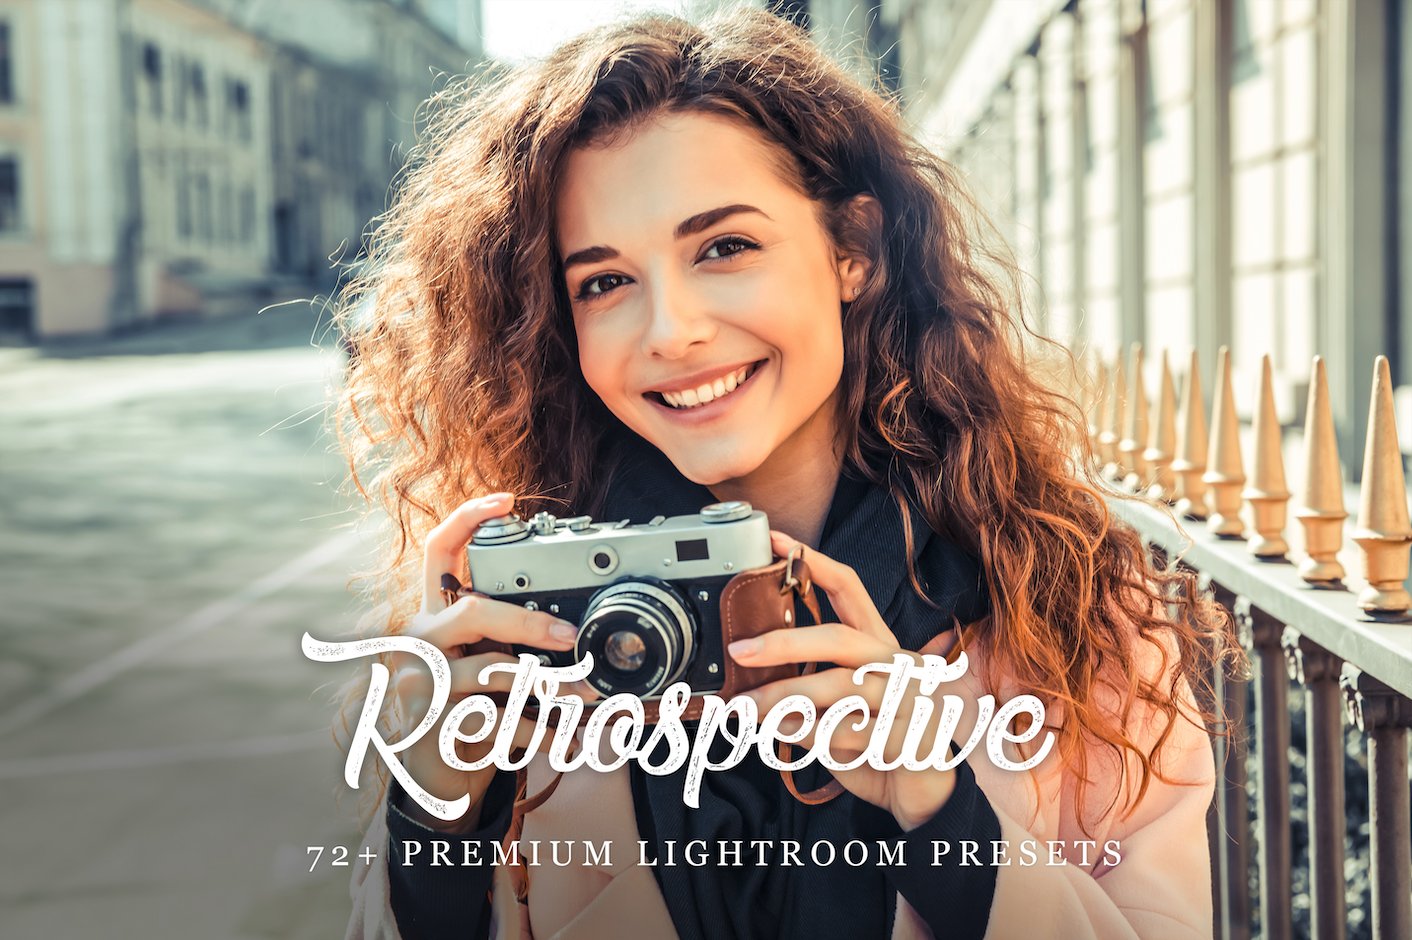 72+ Retrospective Lightroom Presetscover image.